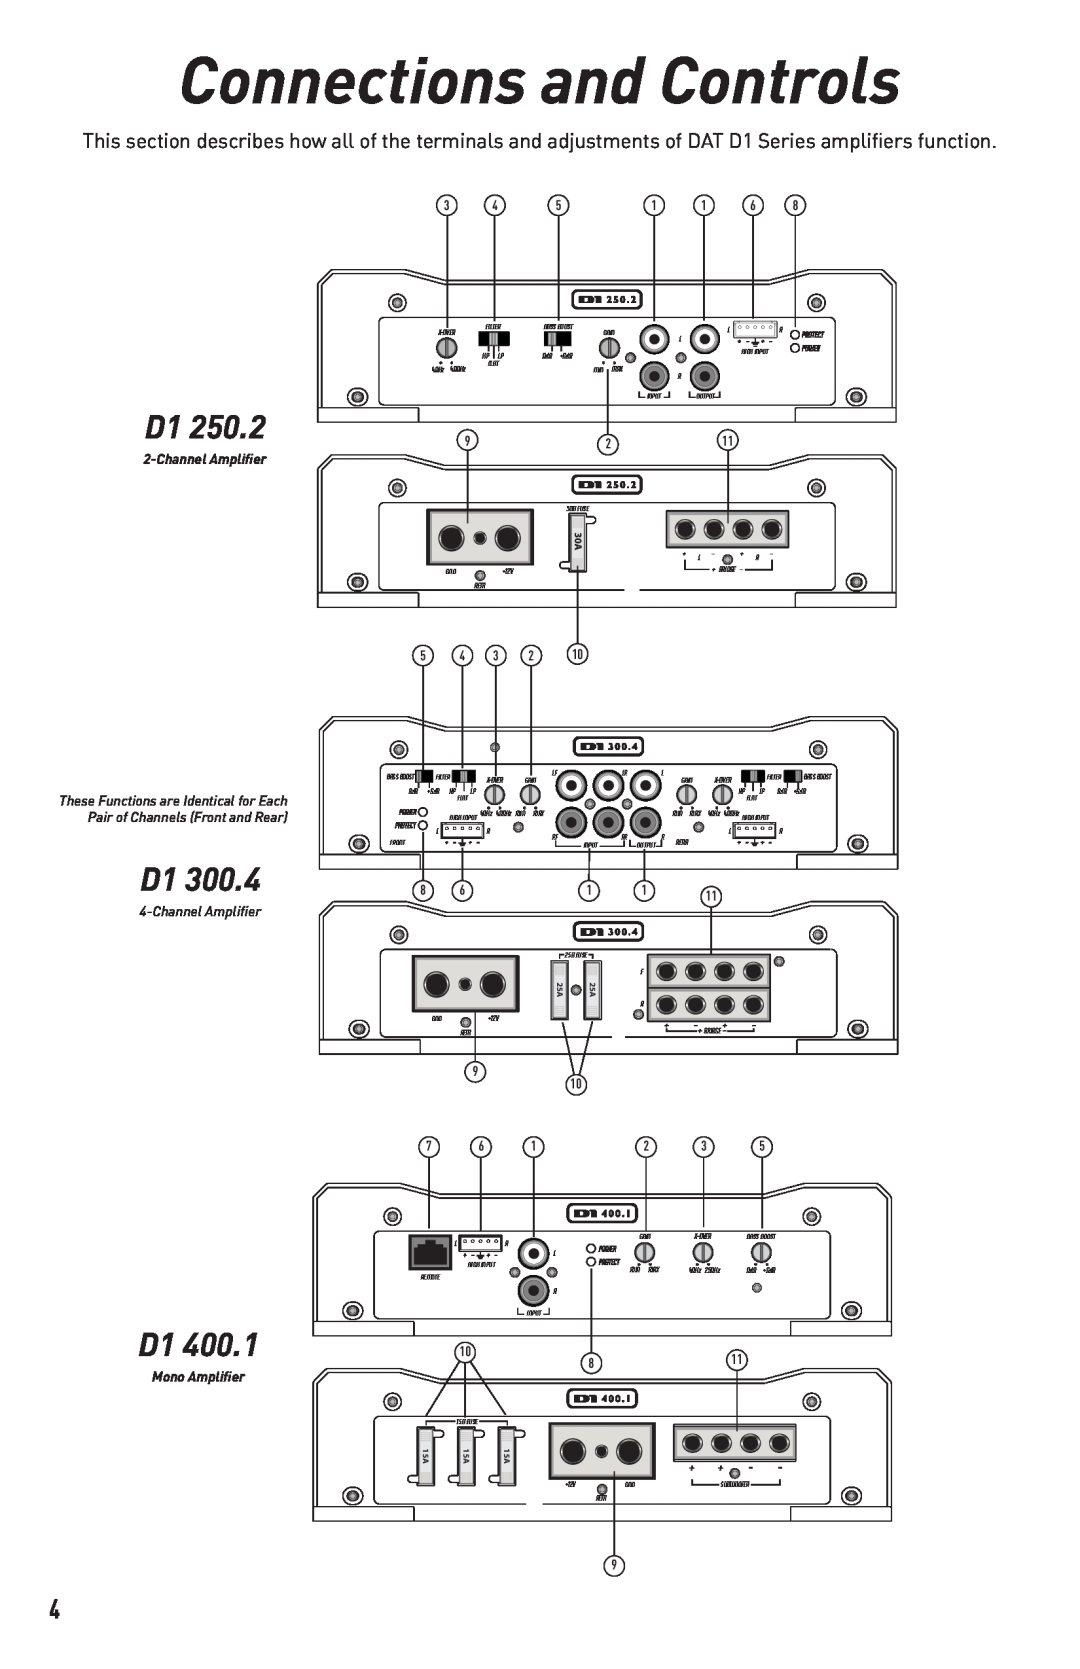 Diamond Audio Technology D1 300.4, D1 400.1, D1 250.2 Connections and Controls, ChannelAmplifier, Mono Amplifier 